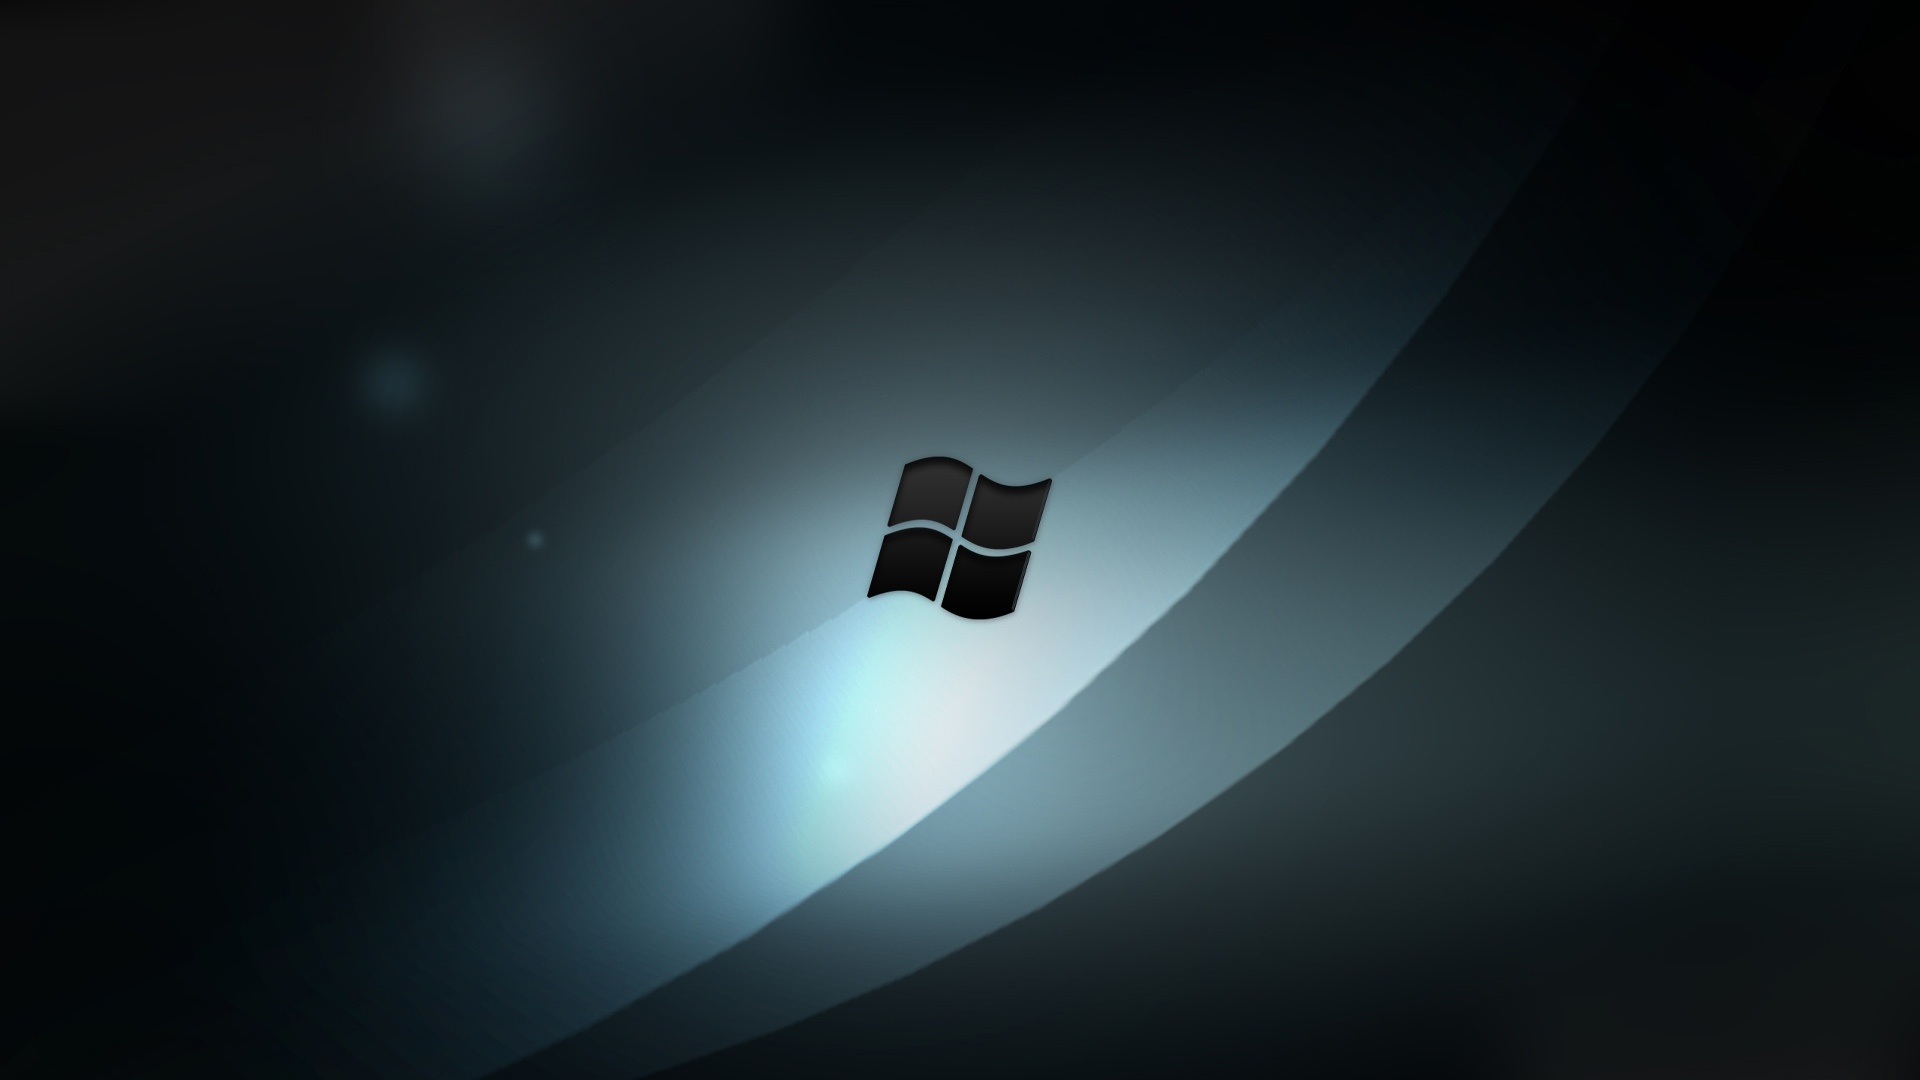 Hình nền Windows đen tuyệt đẹp, đem đến cho người dùng cảm giác sang trọng, hiện đại. Bạn muốn khám phá tất cả các tùy chọn hình nền đen cho máy tính Windows của mình? Nhấn vào hình ảnh để giải quyết thắc mắc của bạn!